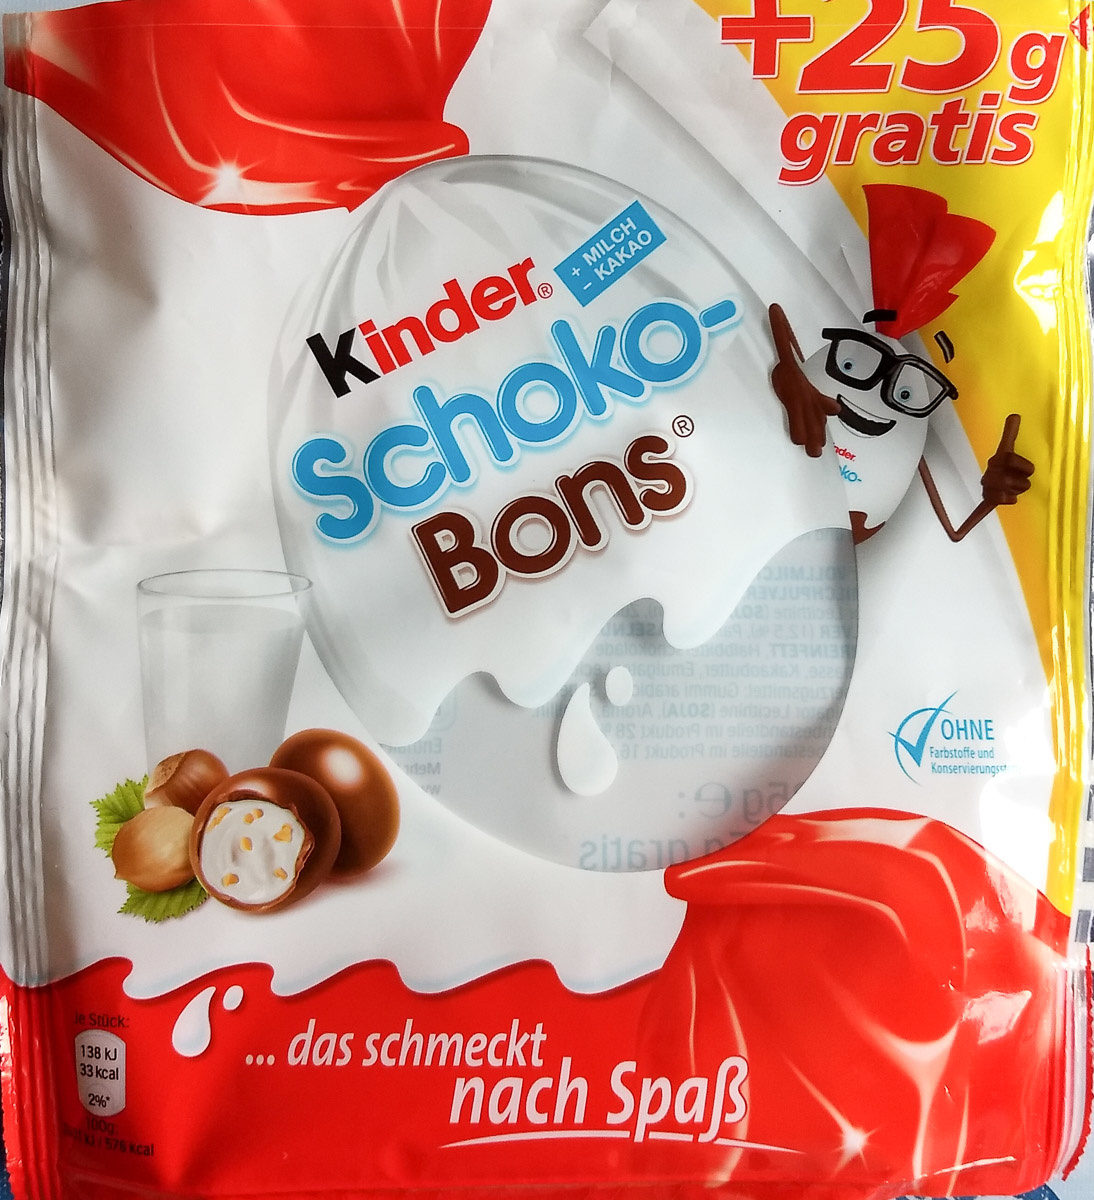 Kinder Schoko-Bons - Produkt